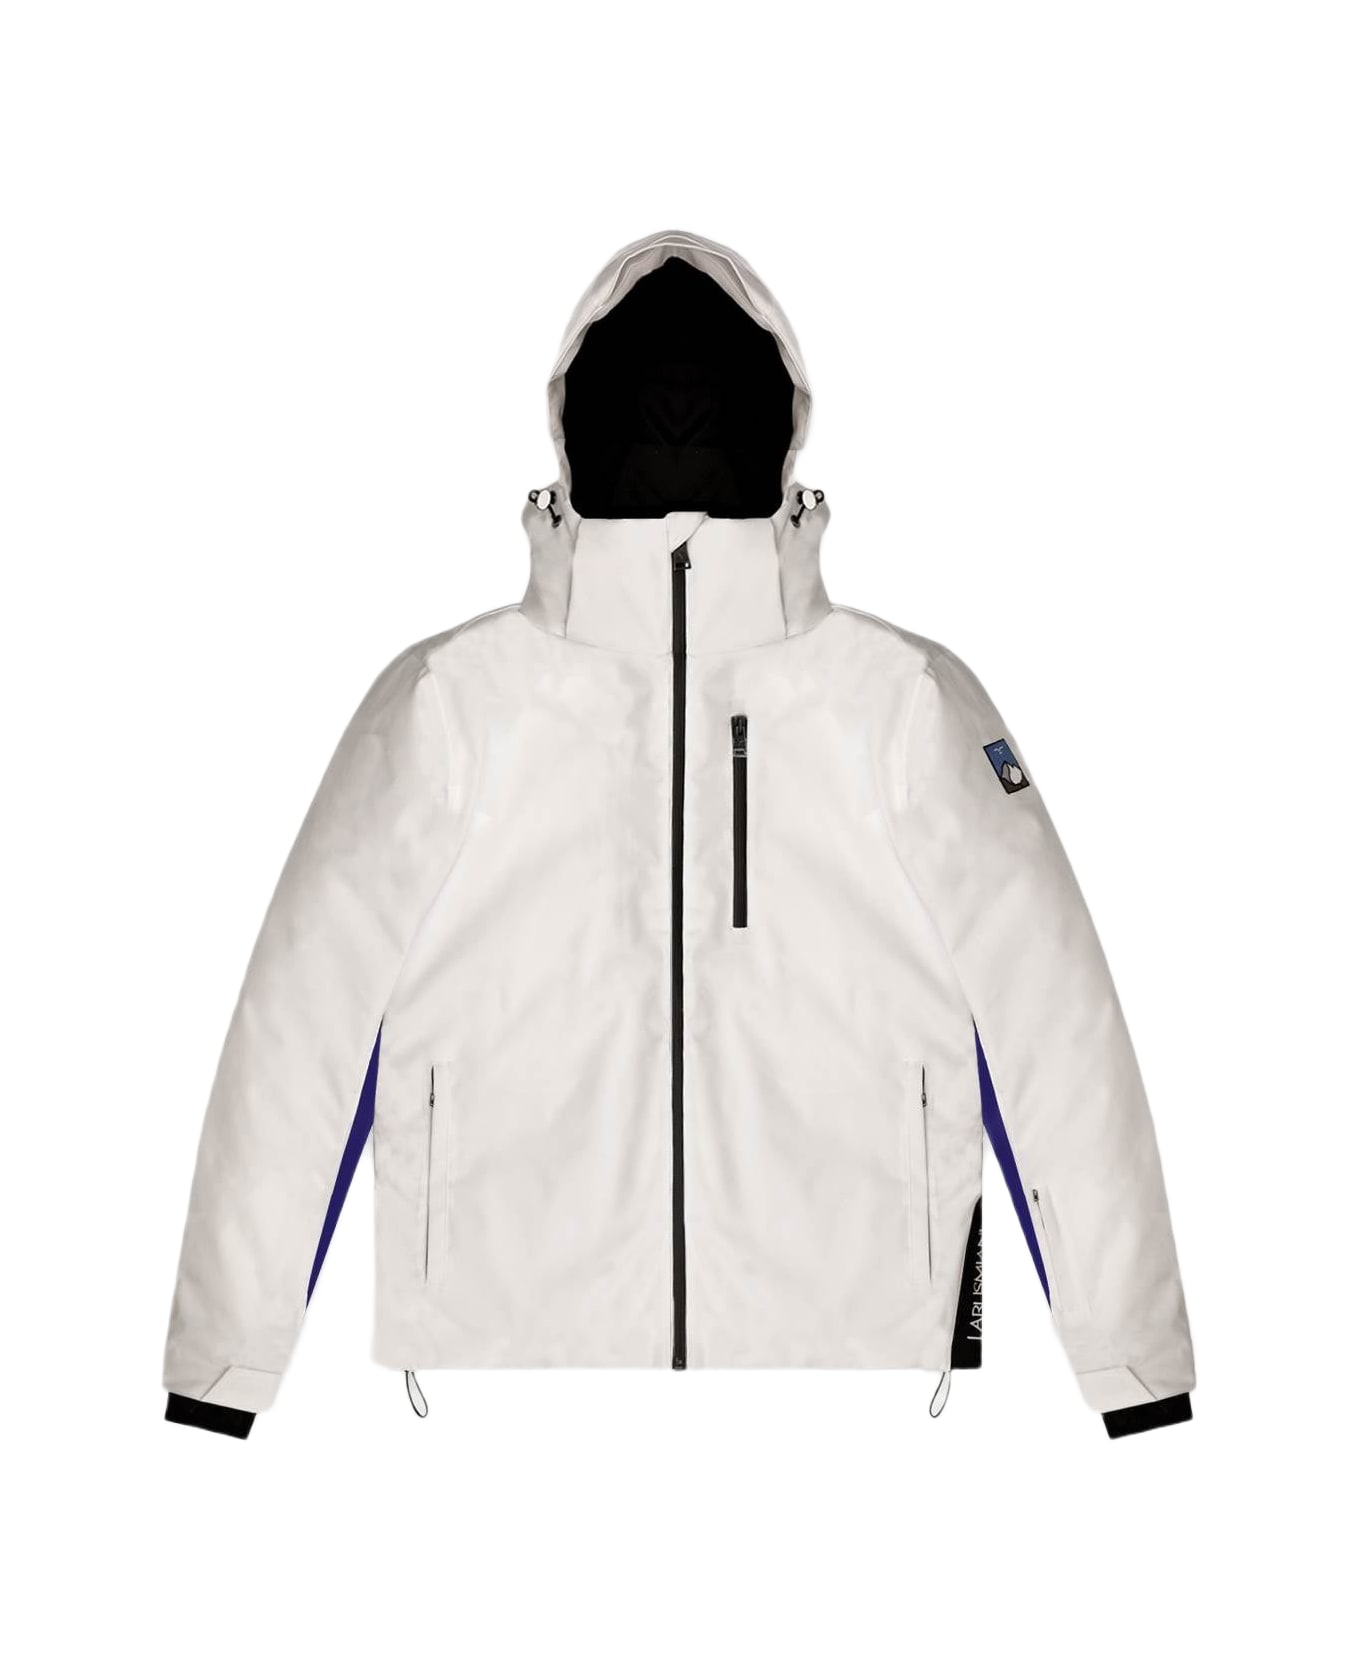 Larusmiani Ski Jacket Jacket - White